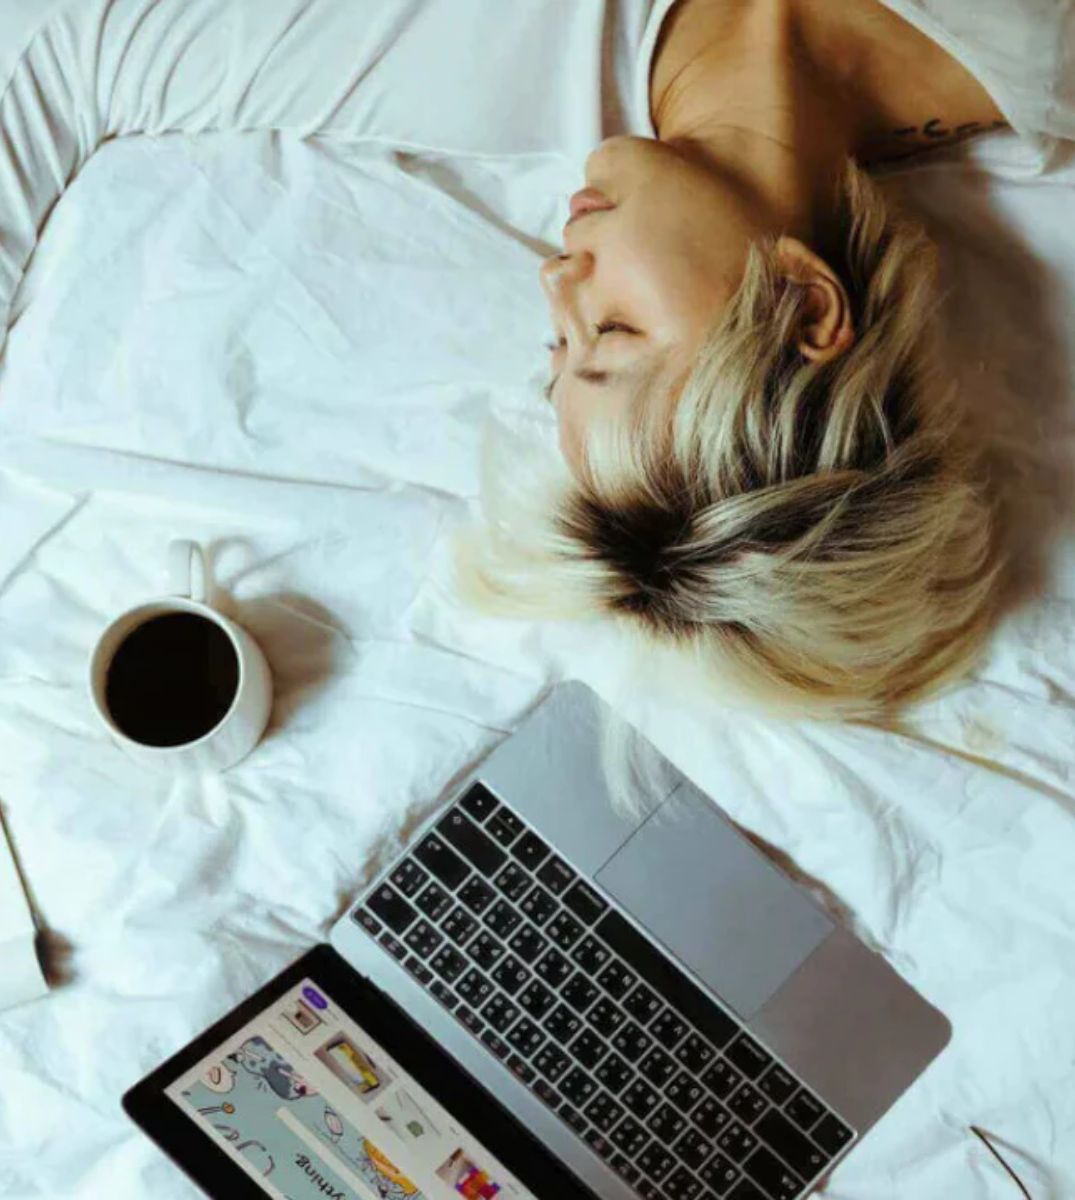 Entspannte Frau liegt im Bett mit einem Laptop, einer Tasse Kaffee und einem Notizbuch, Konzept für Home-Office und Entspannung.